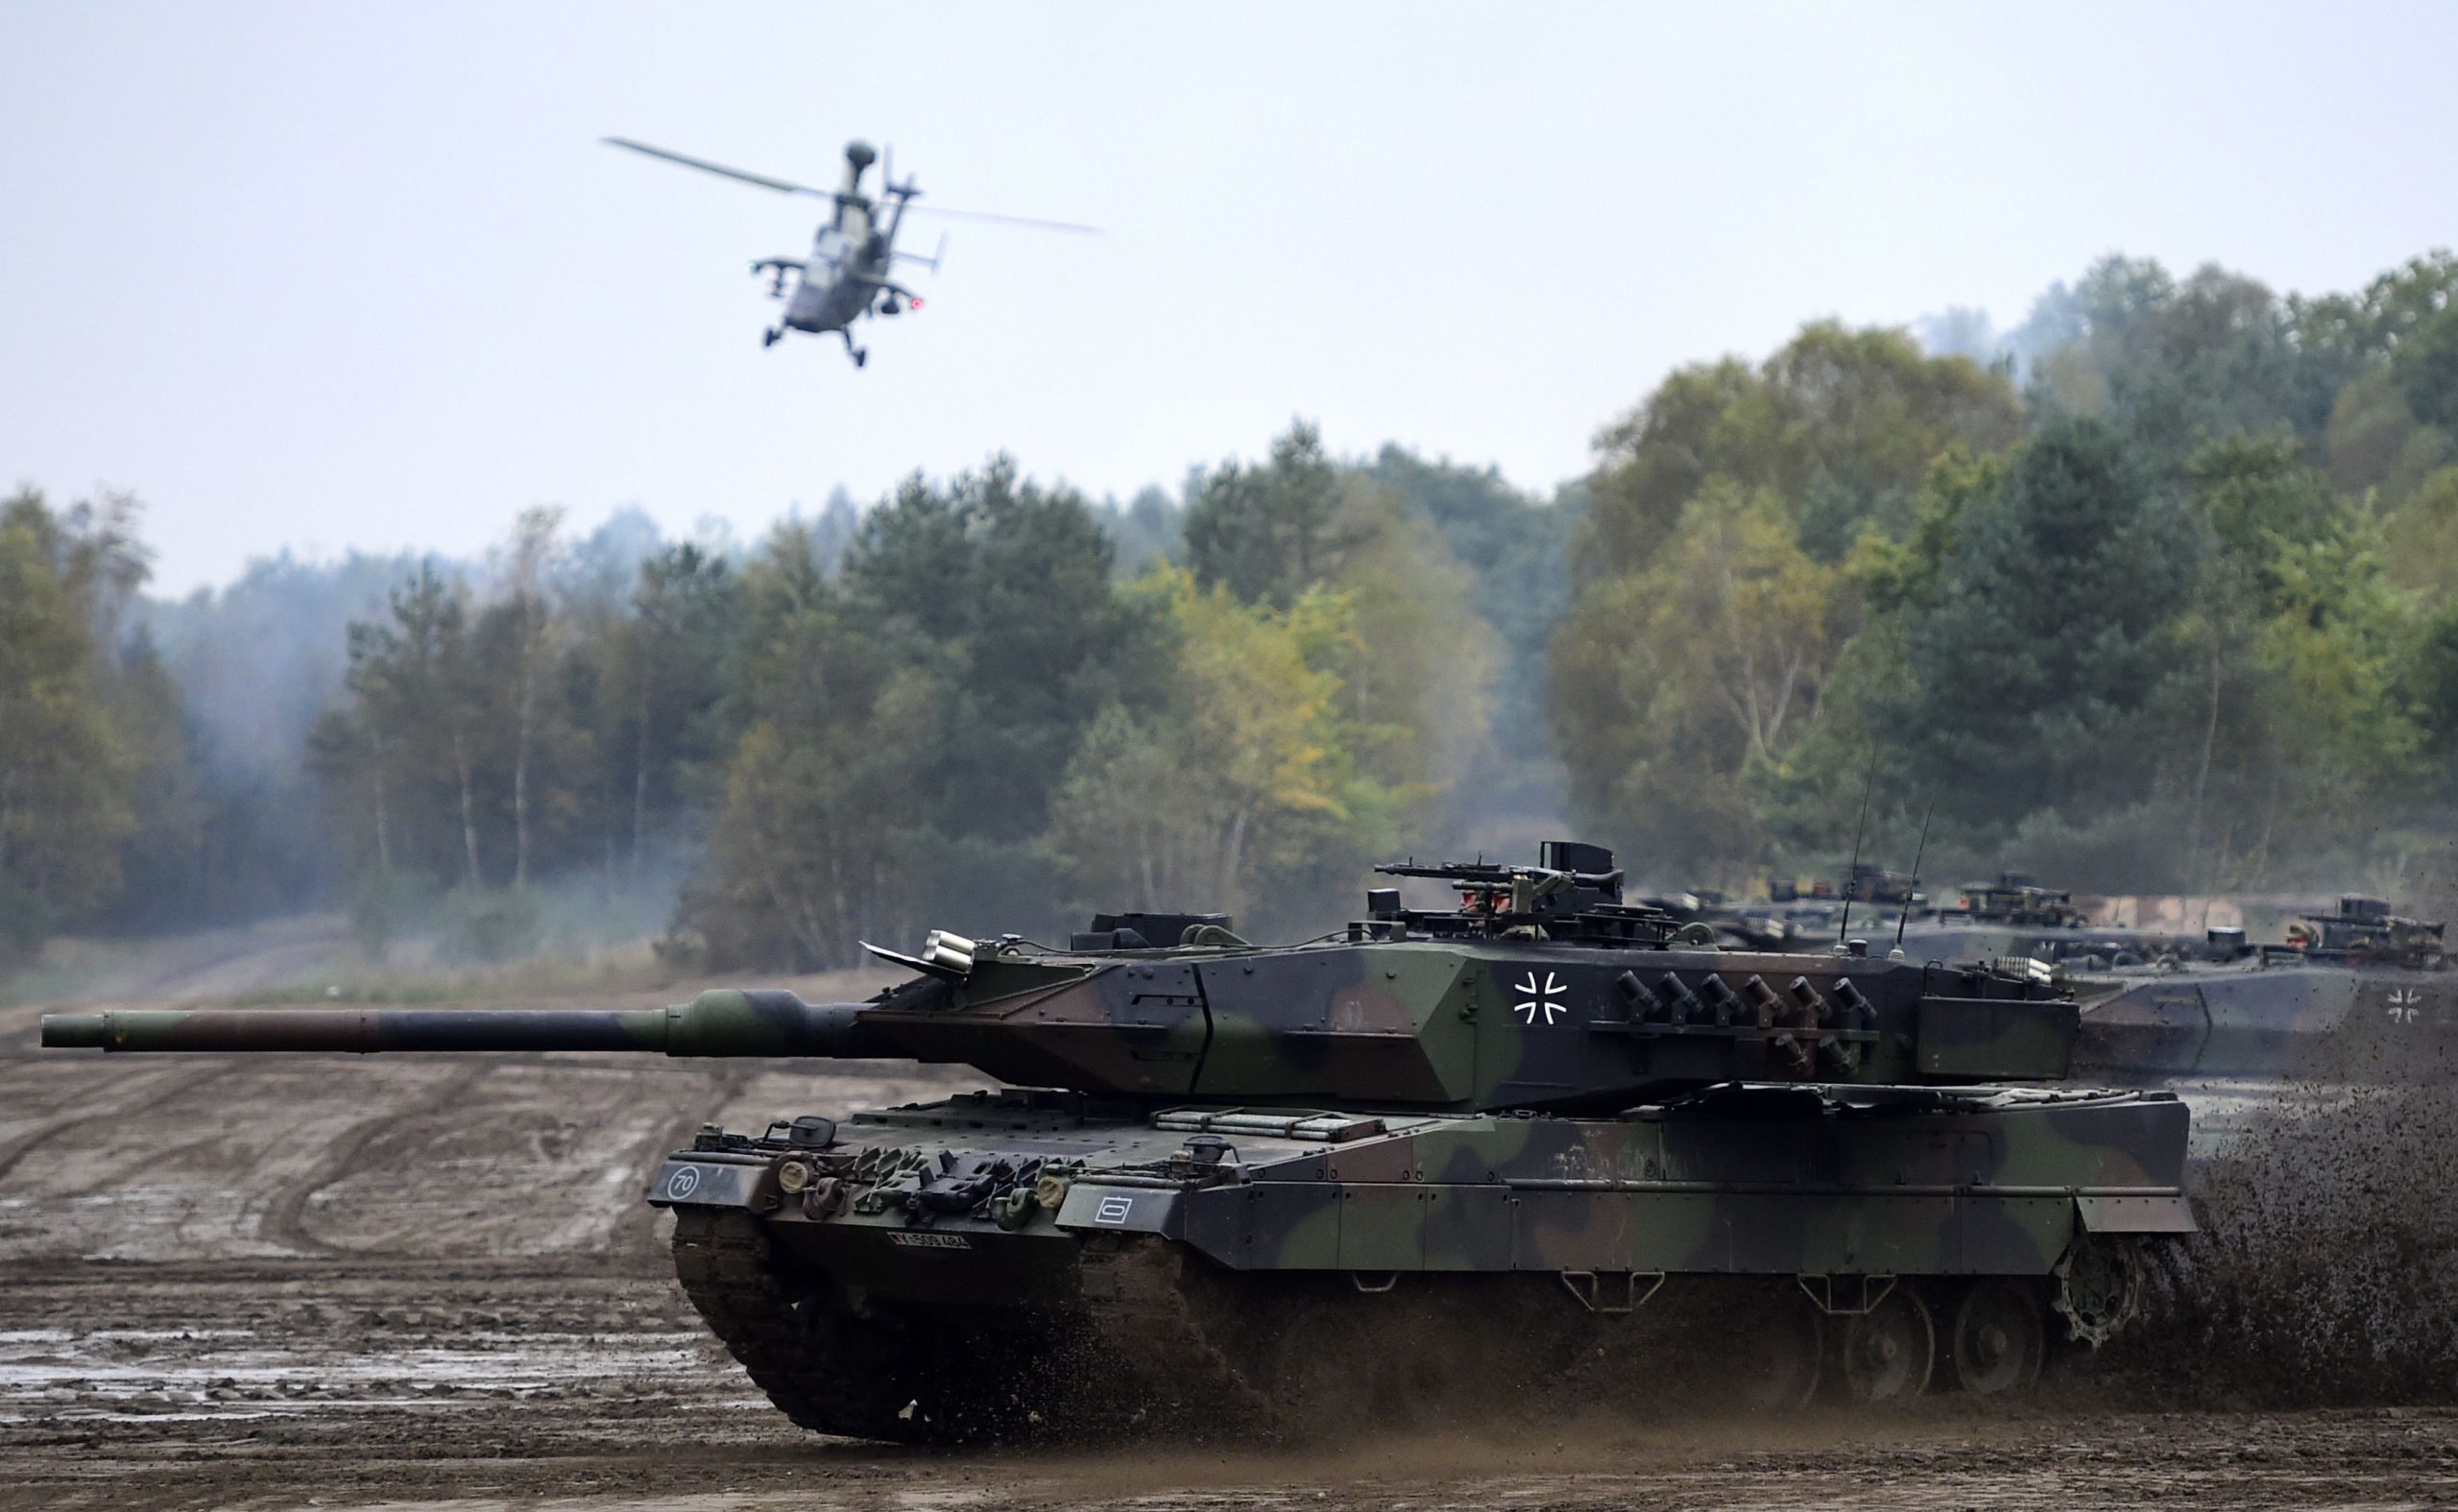 Η Νορβηγία ανακοίνωσε την αποστολή 8 αρμάτων μάχης Leopard 2 στην Ουκρανία